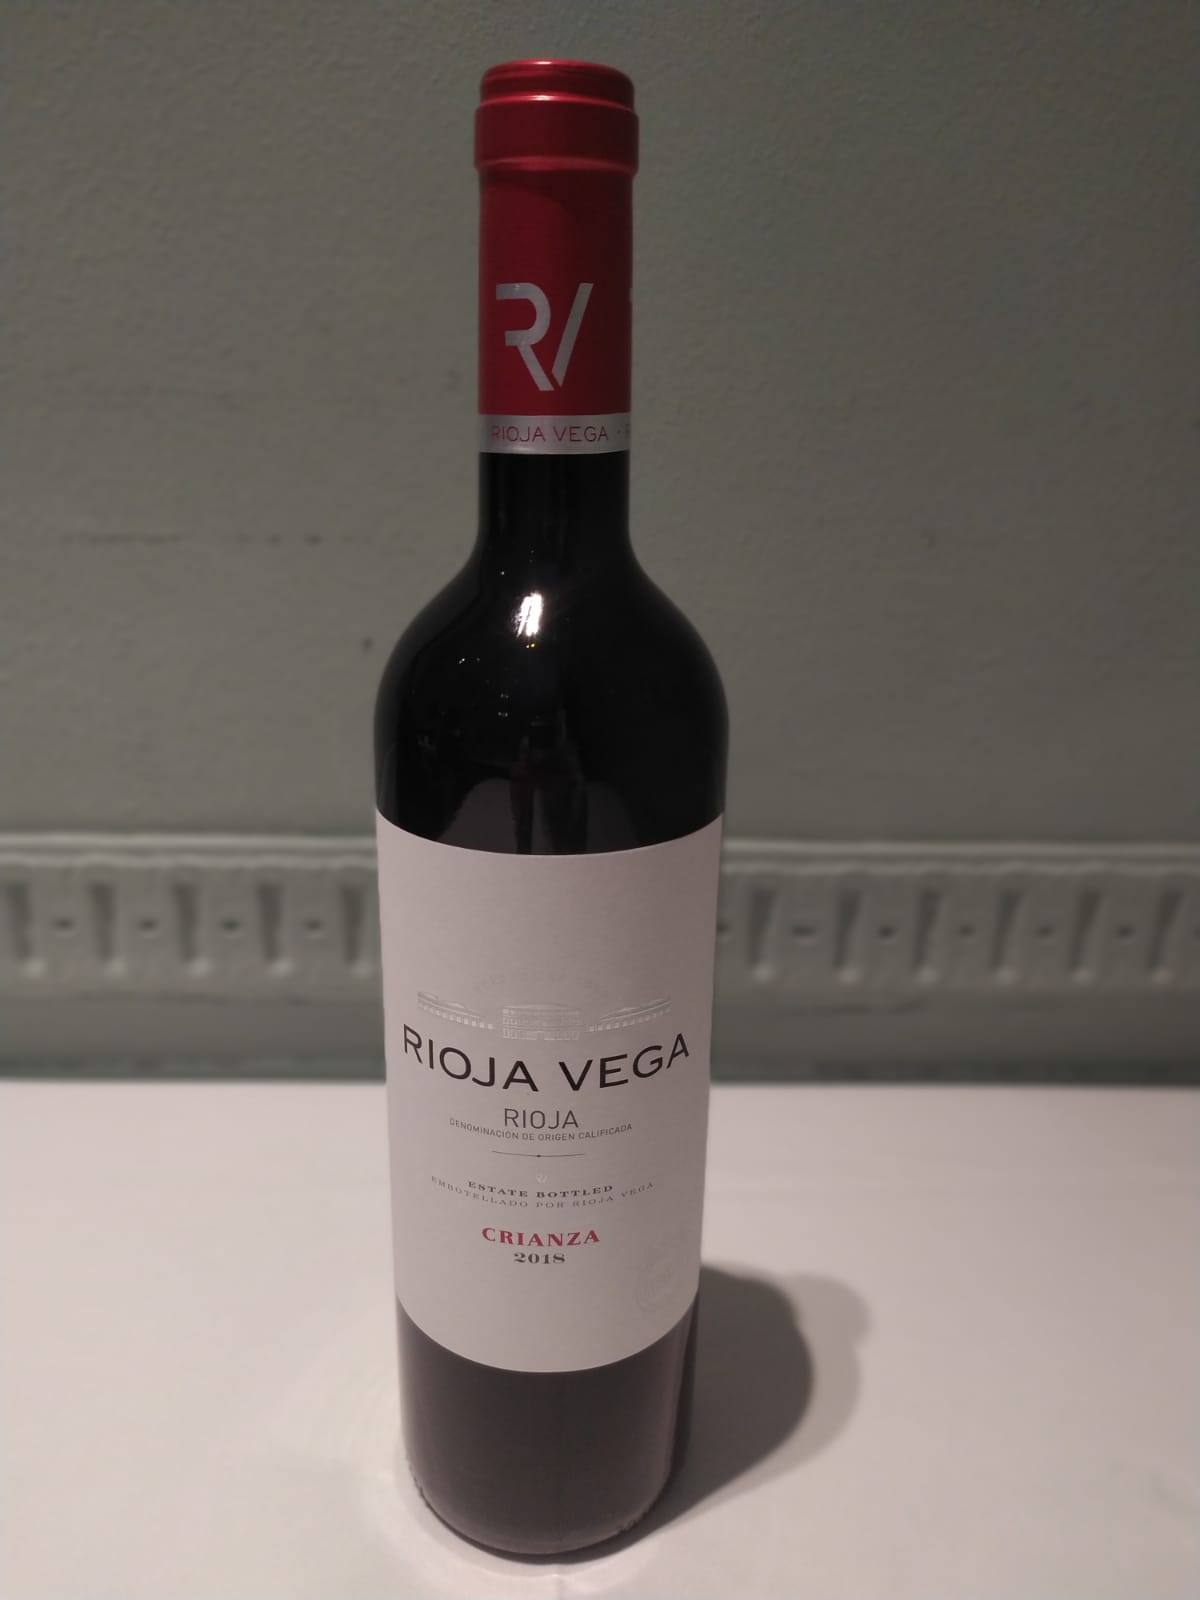 Rioja Vega (Recomanació de la casa)